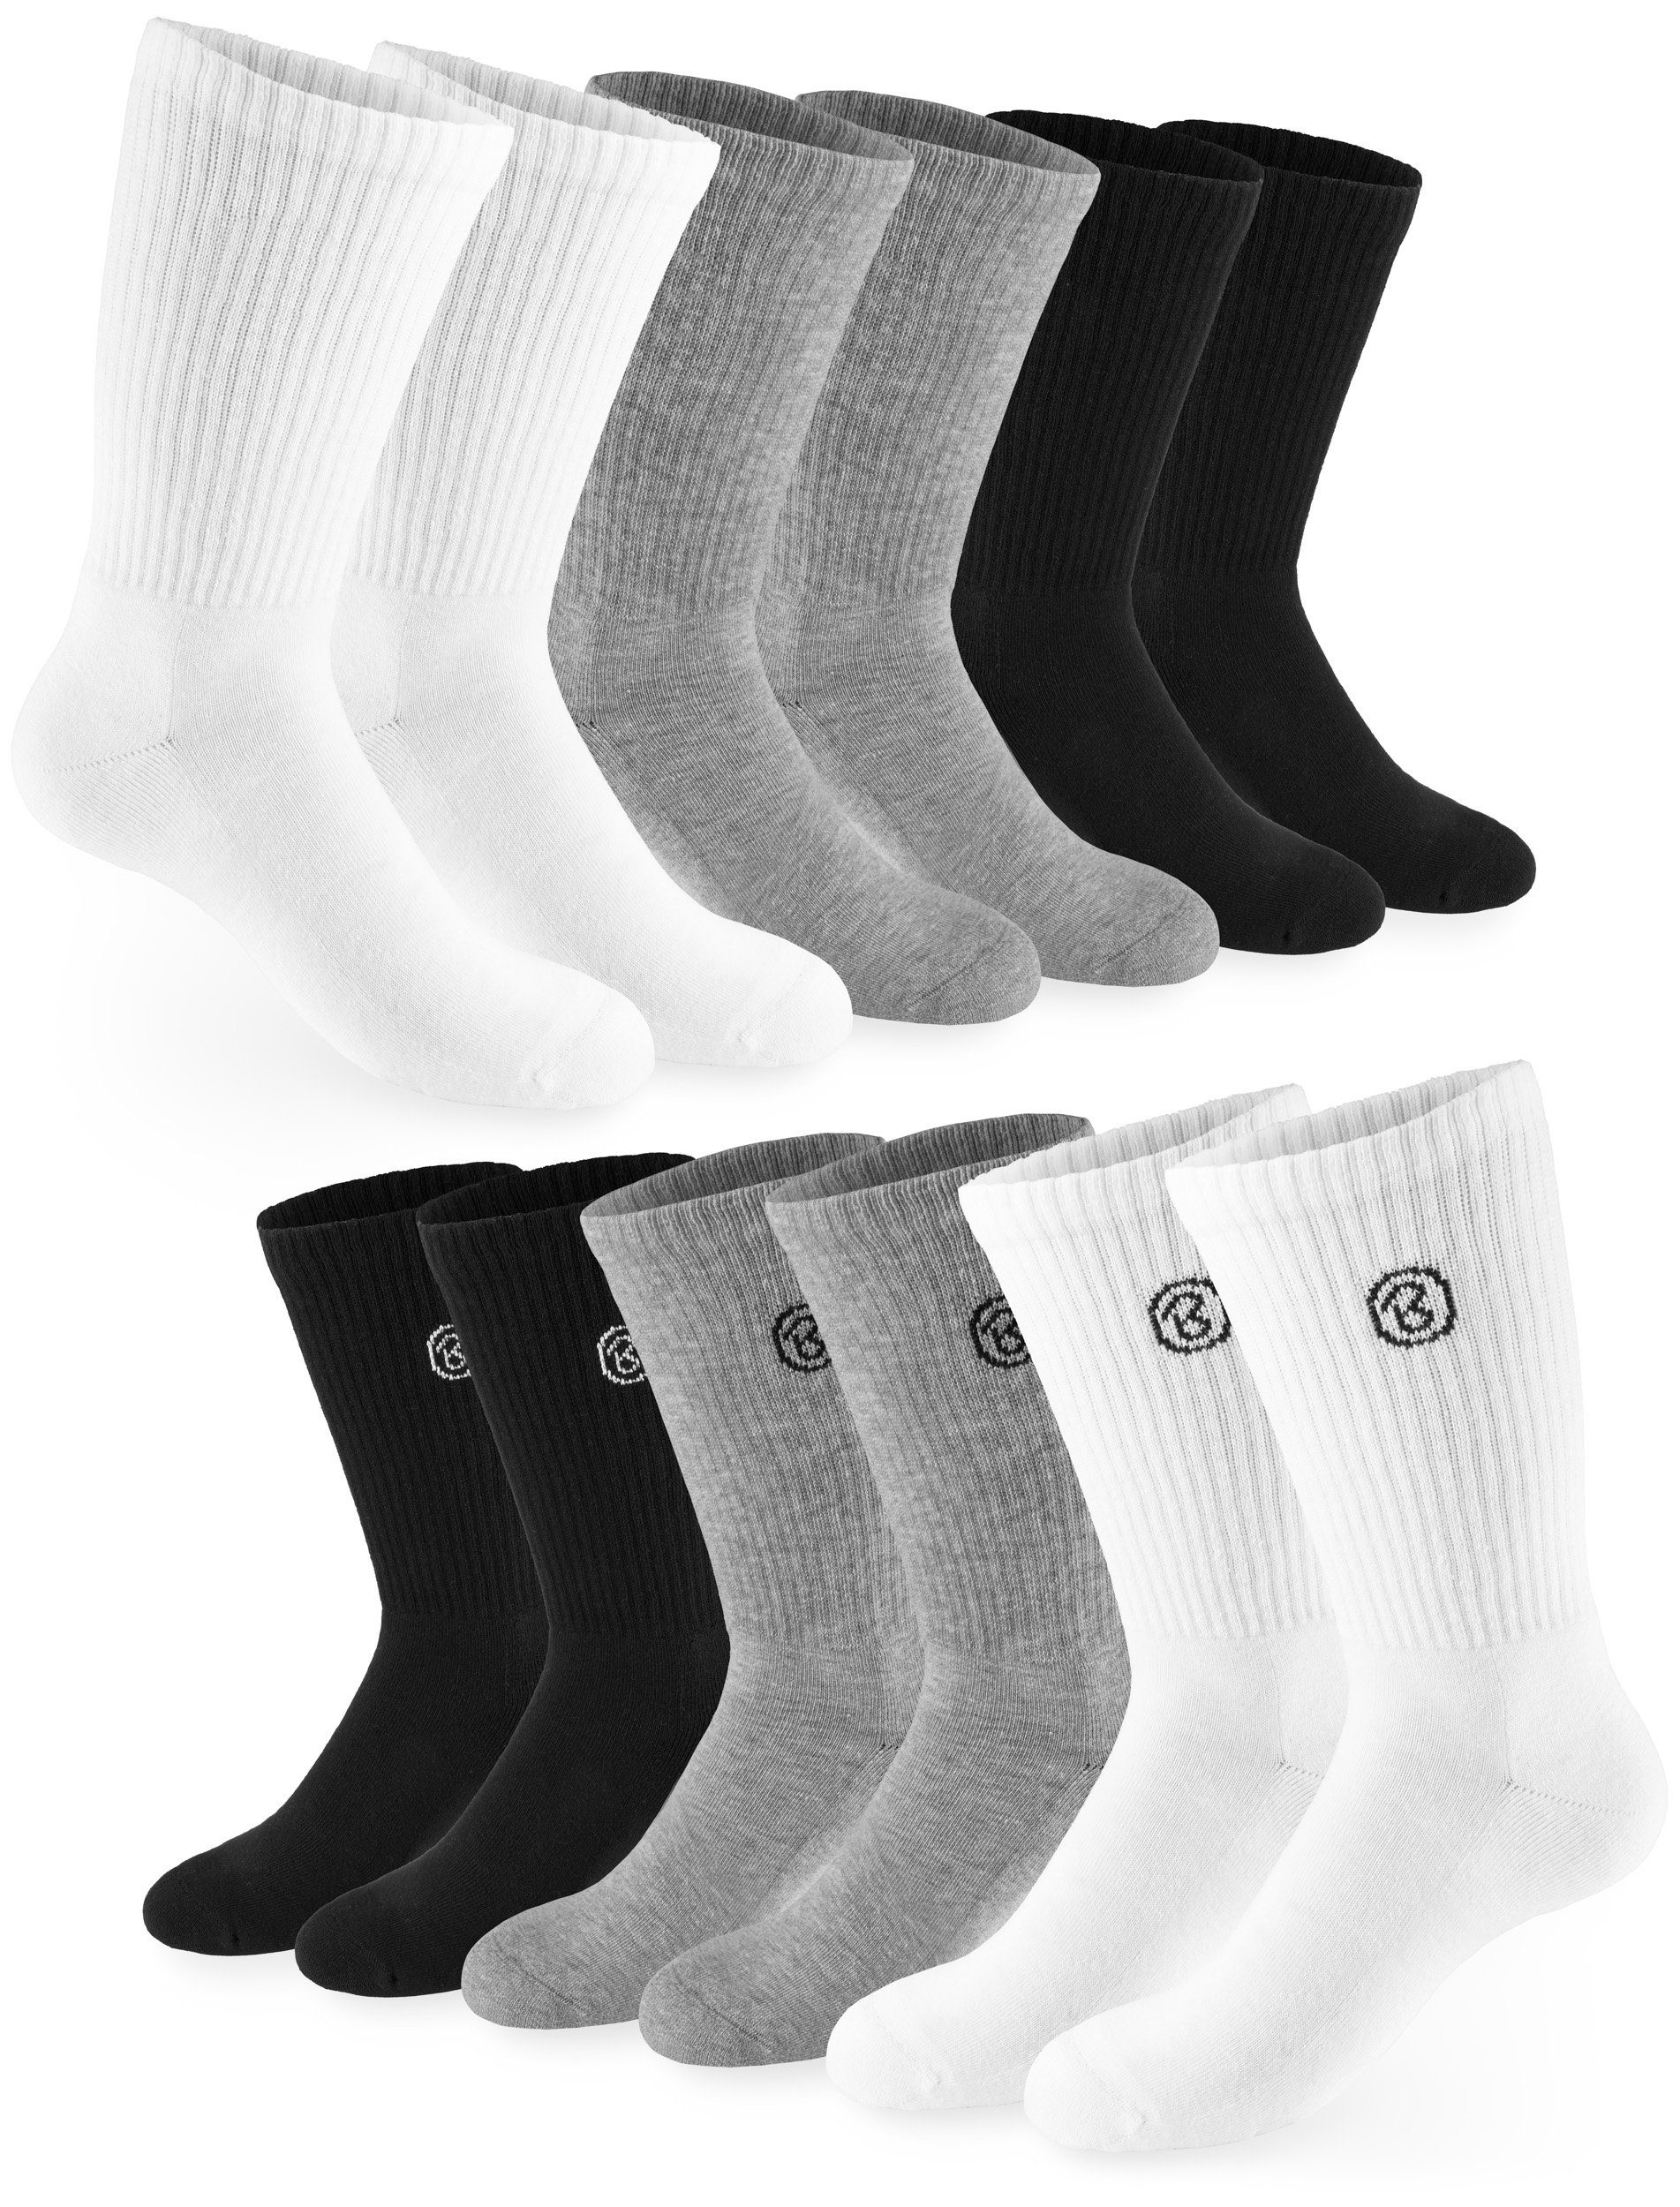 Socken Fitness und - - Tennissocken 6 aus Baumwollsocken Lange Damen Baumwolle Paar) für Polyester Sportsocken Unisex BRUBAKER Herren Crew Farbmix Socks (Set, und